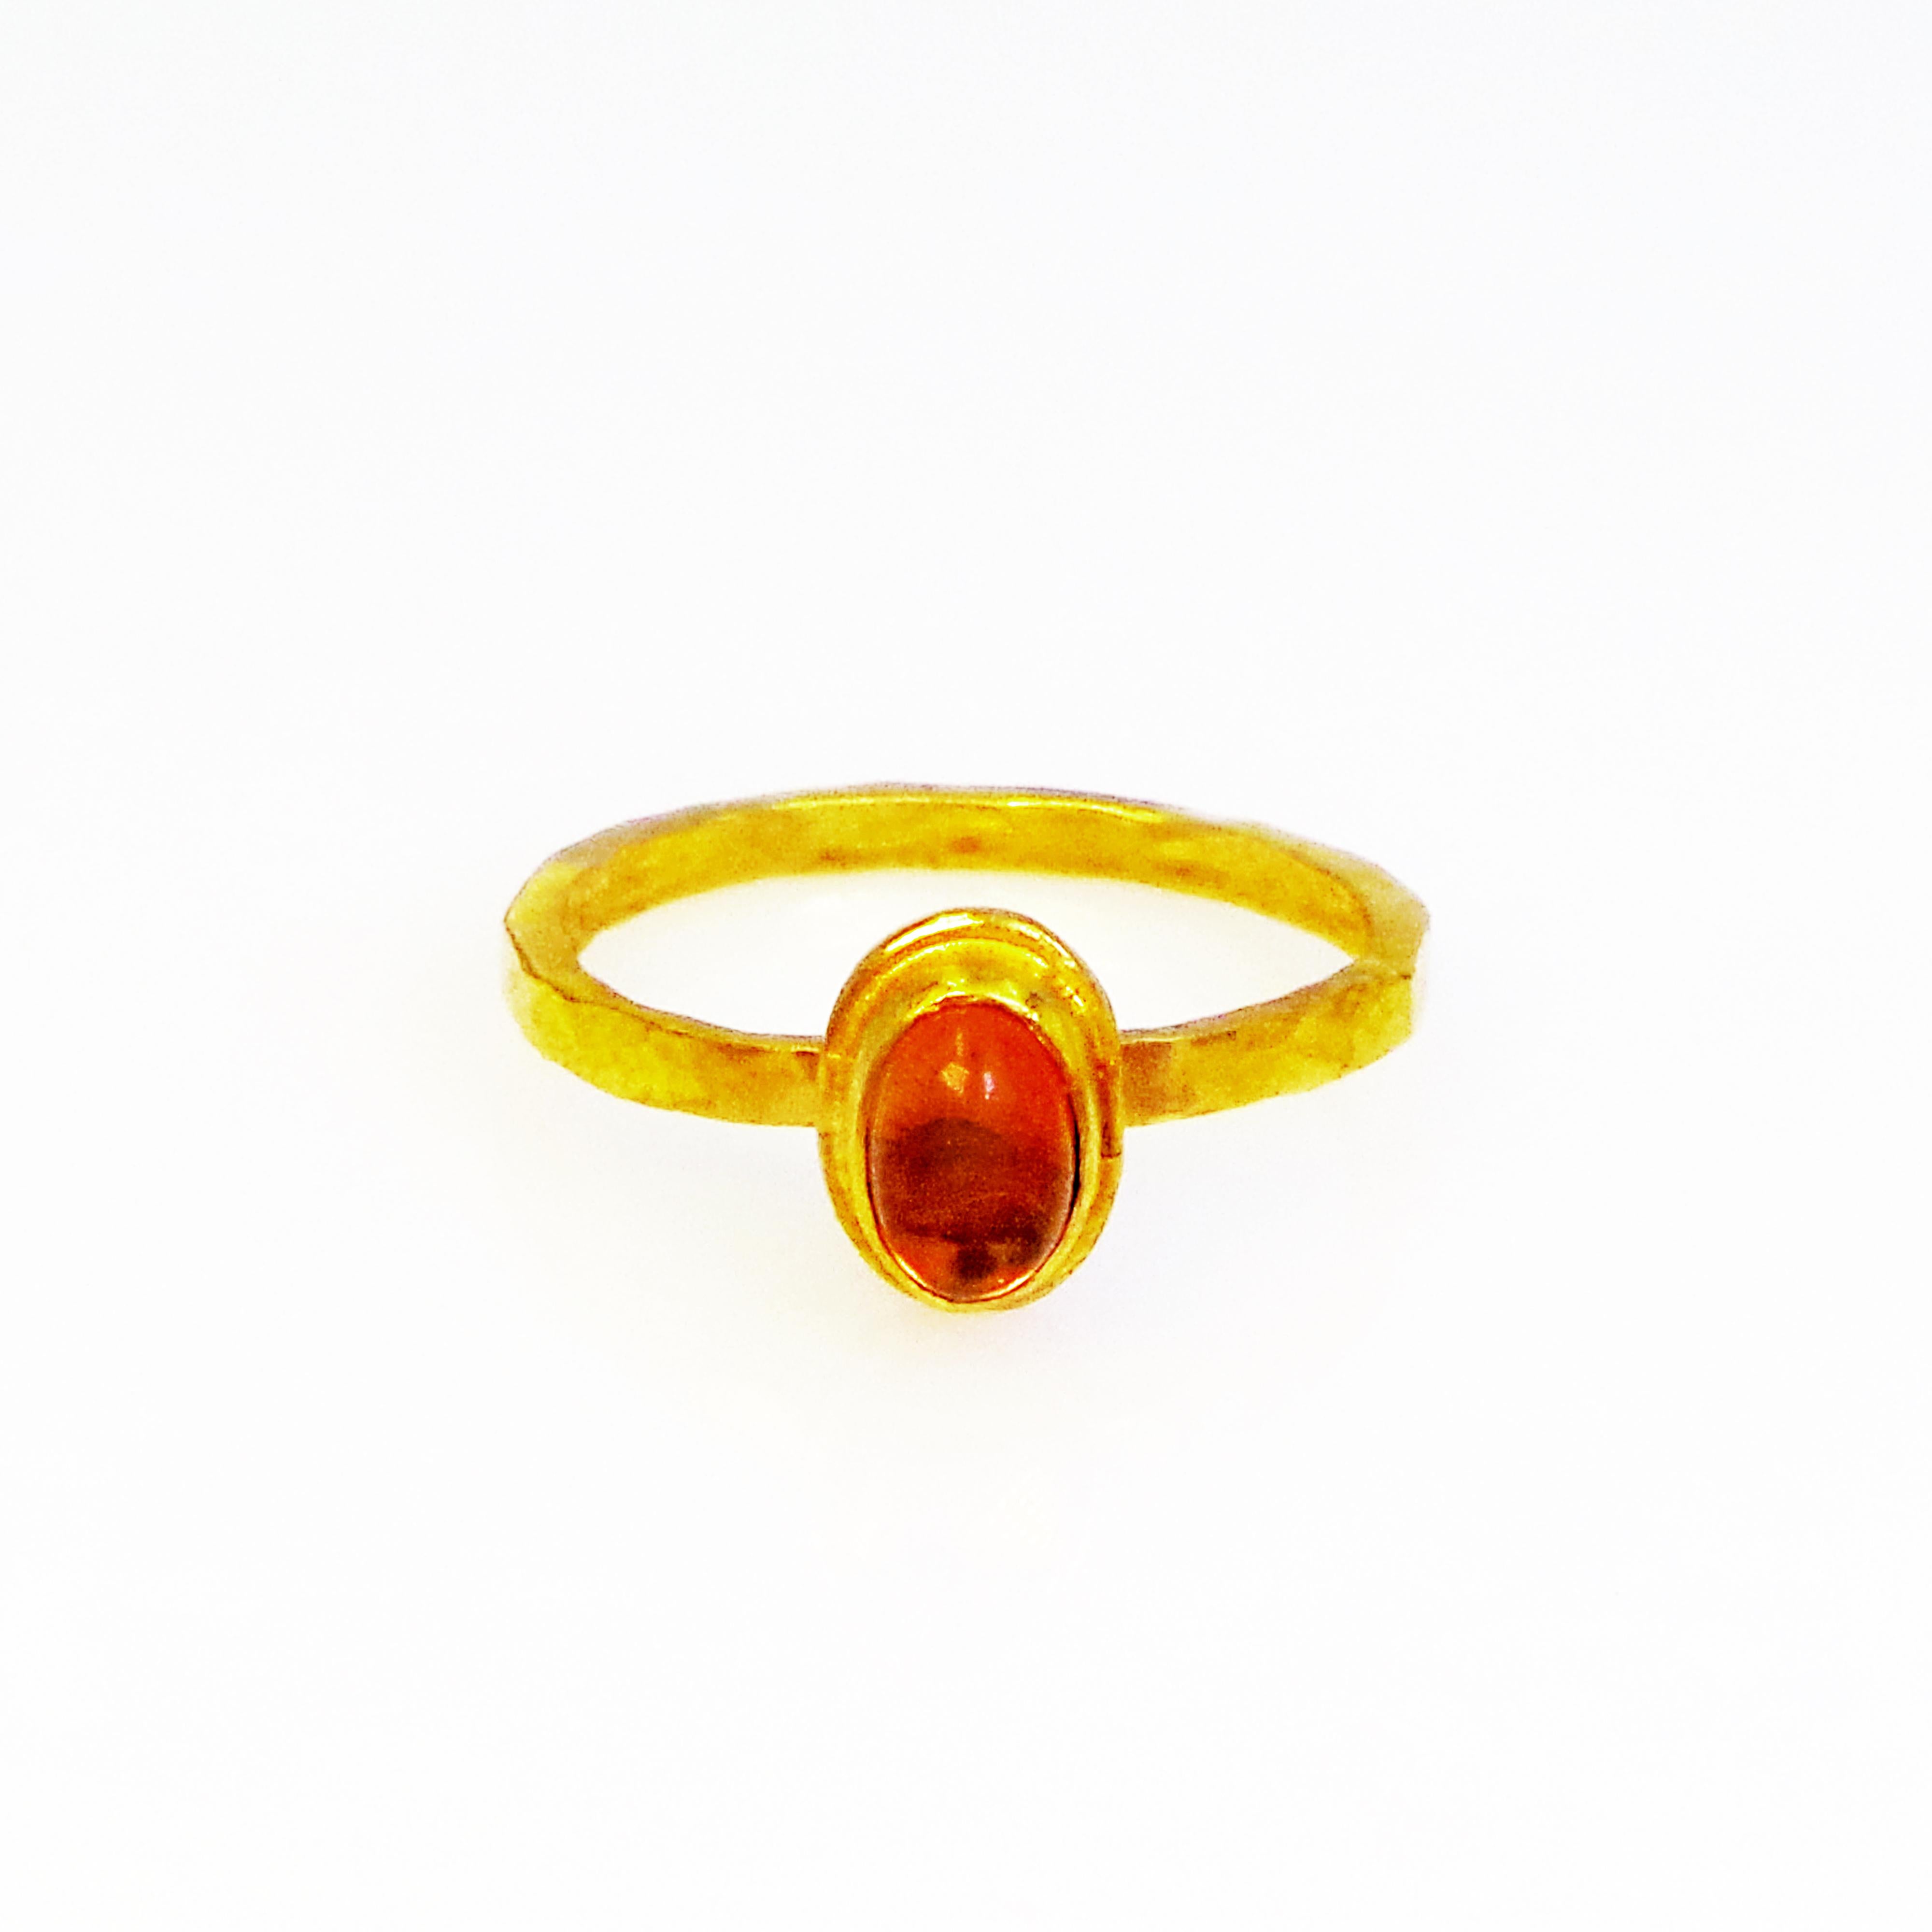 Rötlich-orangefarbene Spessartin-Granat-Cabochons und Ring und Ohrringe aus 22 Karat Gelbgold. Der Ring hat die Größe 7 und ist mit einer rustikalen, gehämmerten Textur versehen. Die Ohrringe sind 1,13 Zoll oder 29 mm lang. Schönes, zierliches und